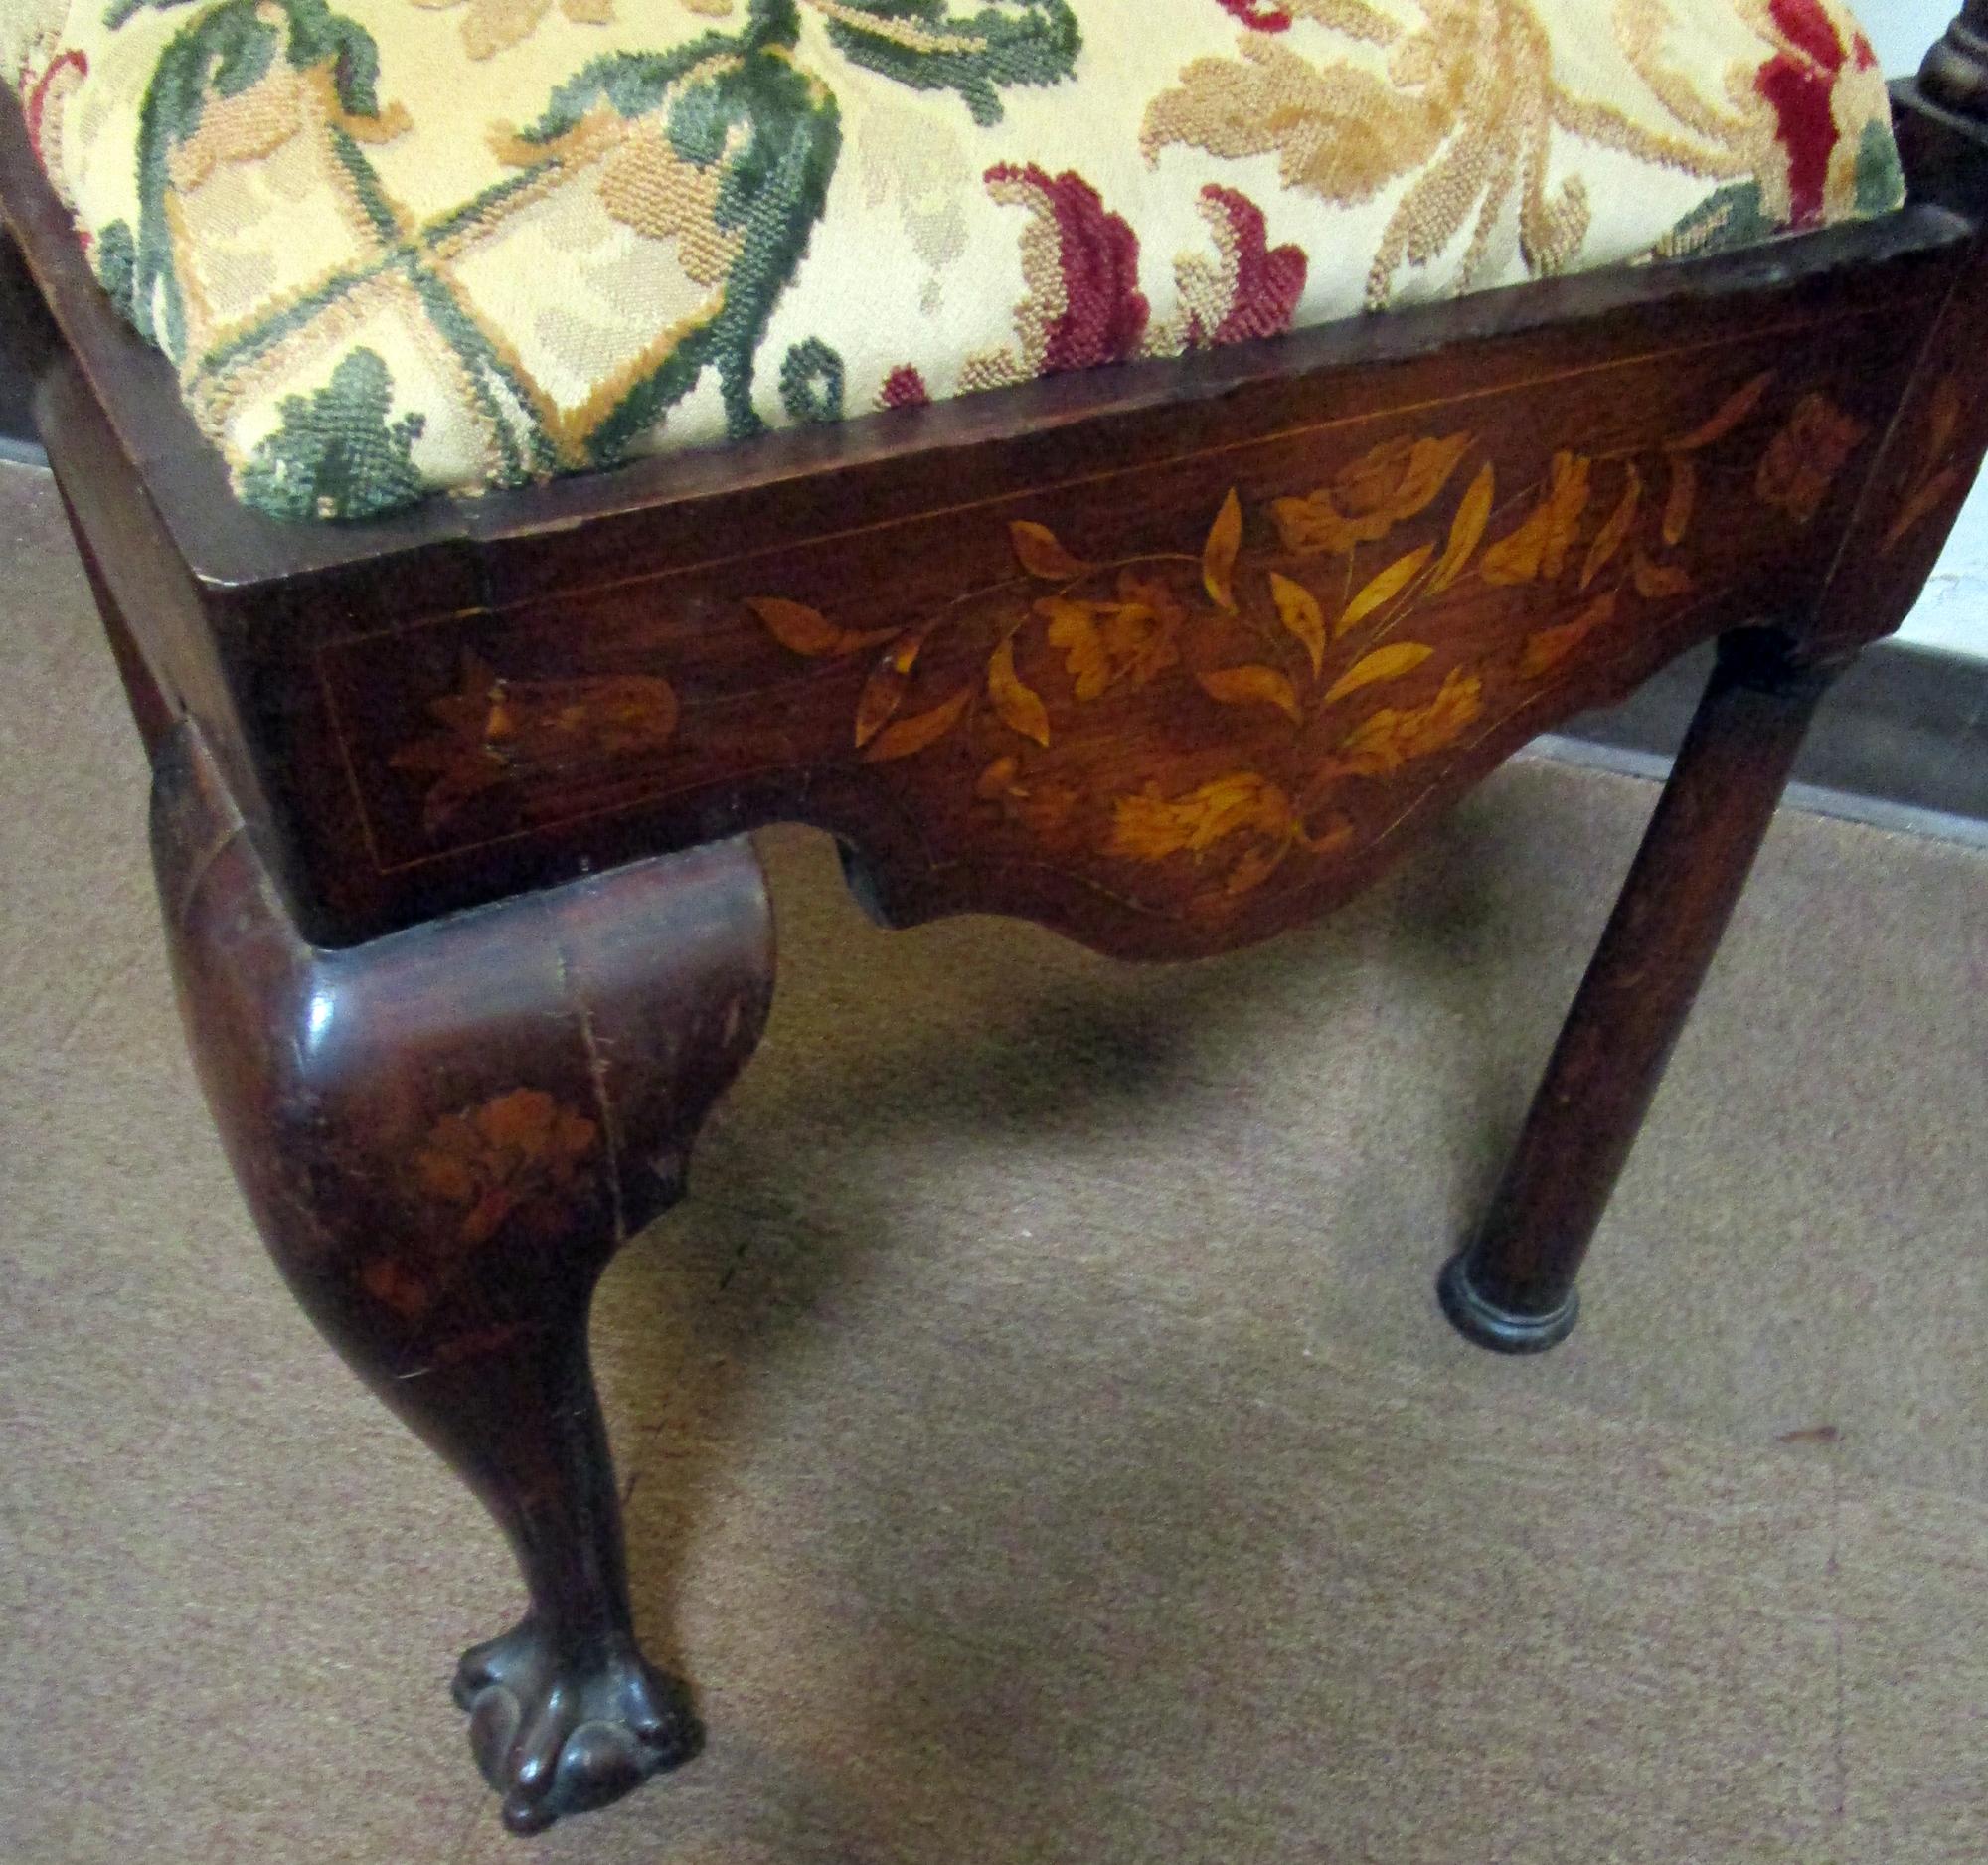 Cette remarquable chaise d'angle en noyer Chippendale du XVIIIe siècle présente une marqueterie complexe dans un délicat motif floral. Même l'arrière de la traverse supérieure, les éclisses et l'arrière des pieds sont incrustés. La chaise repose sur